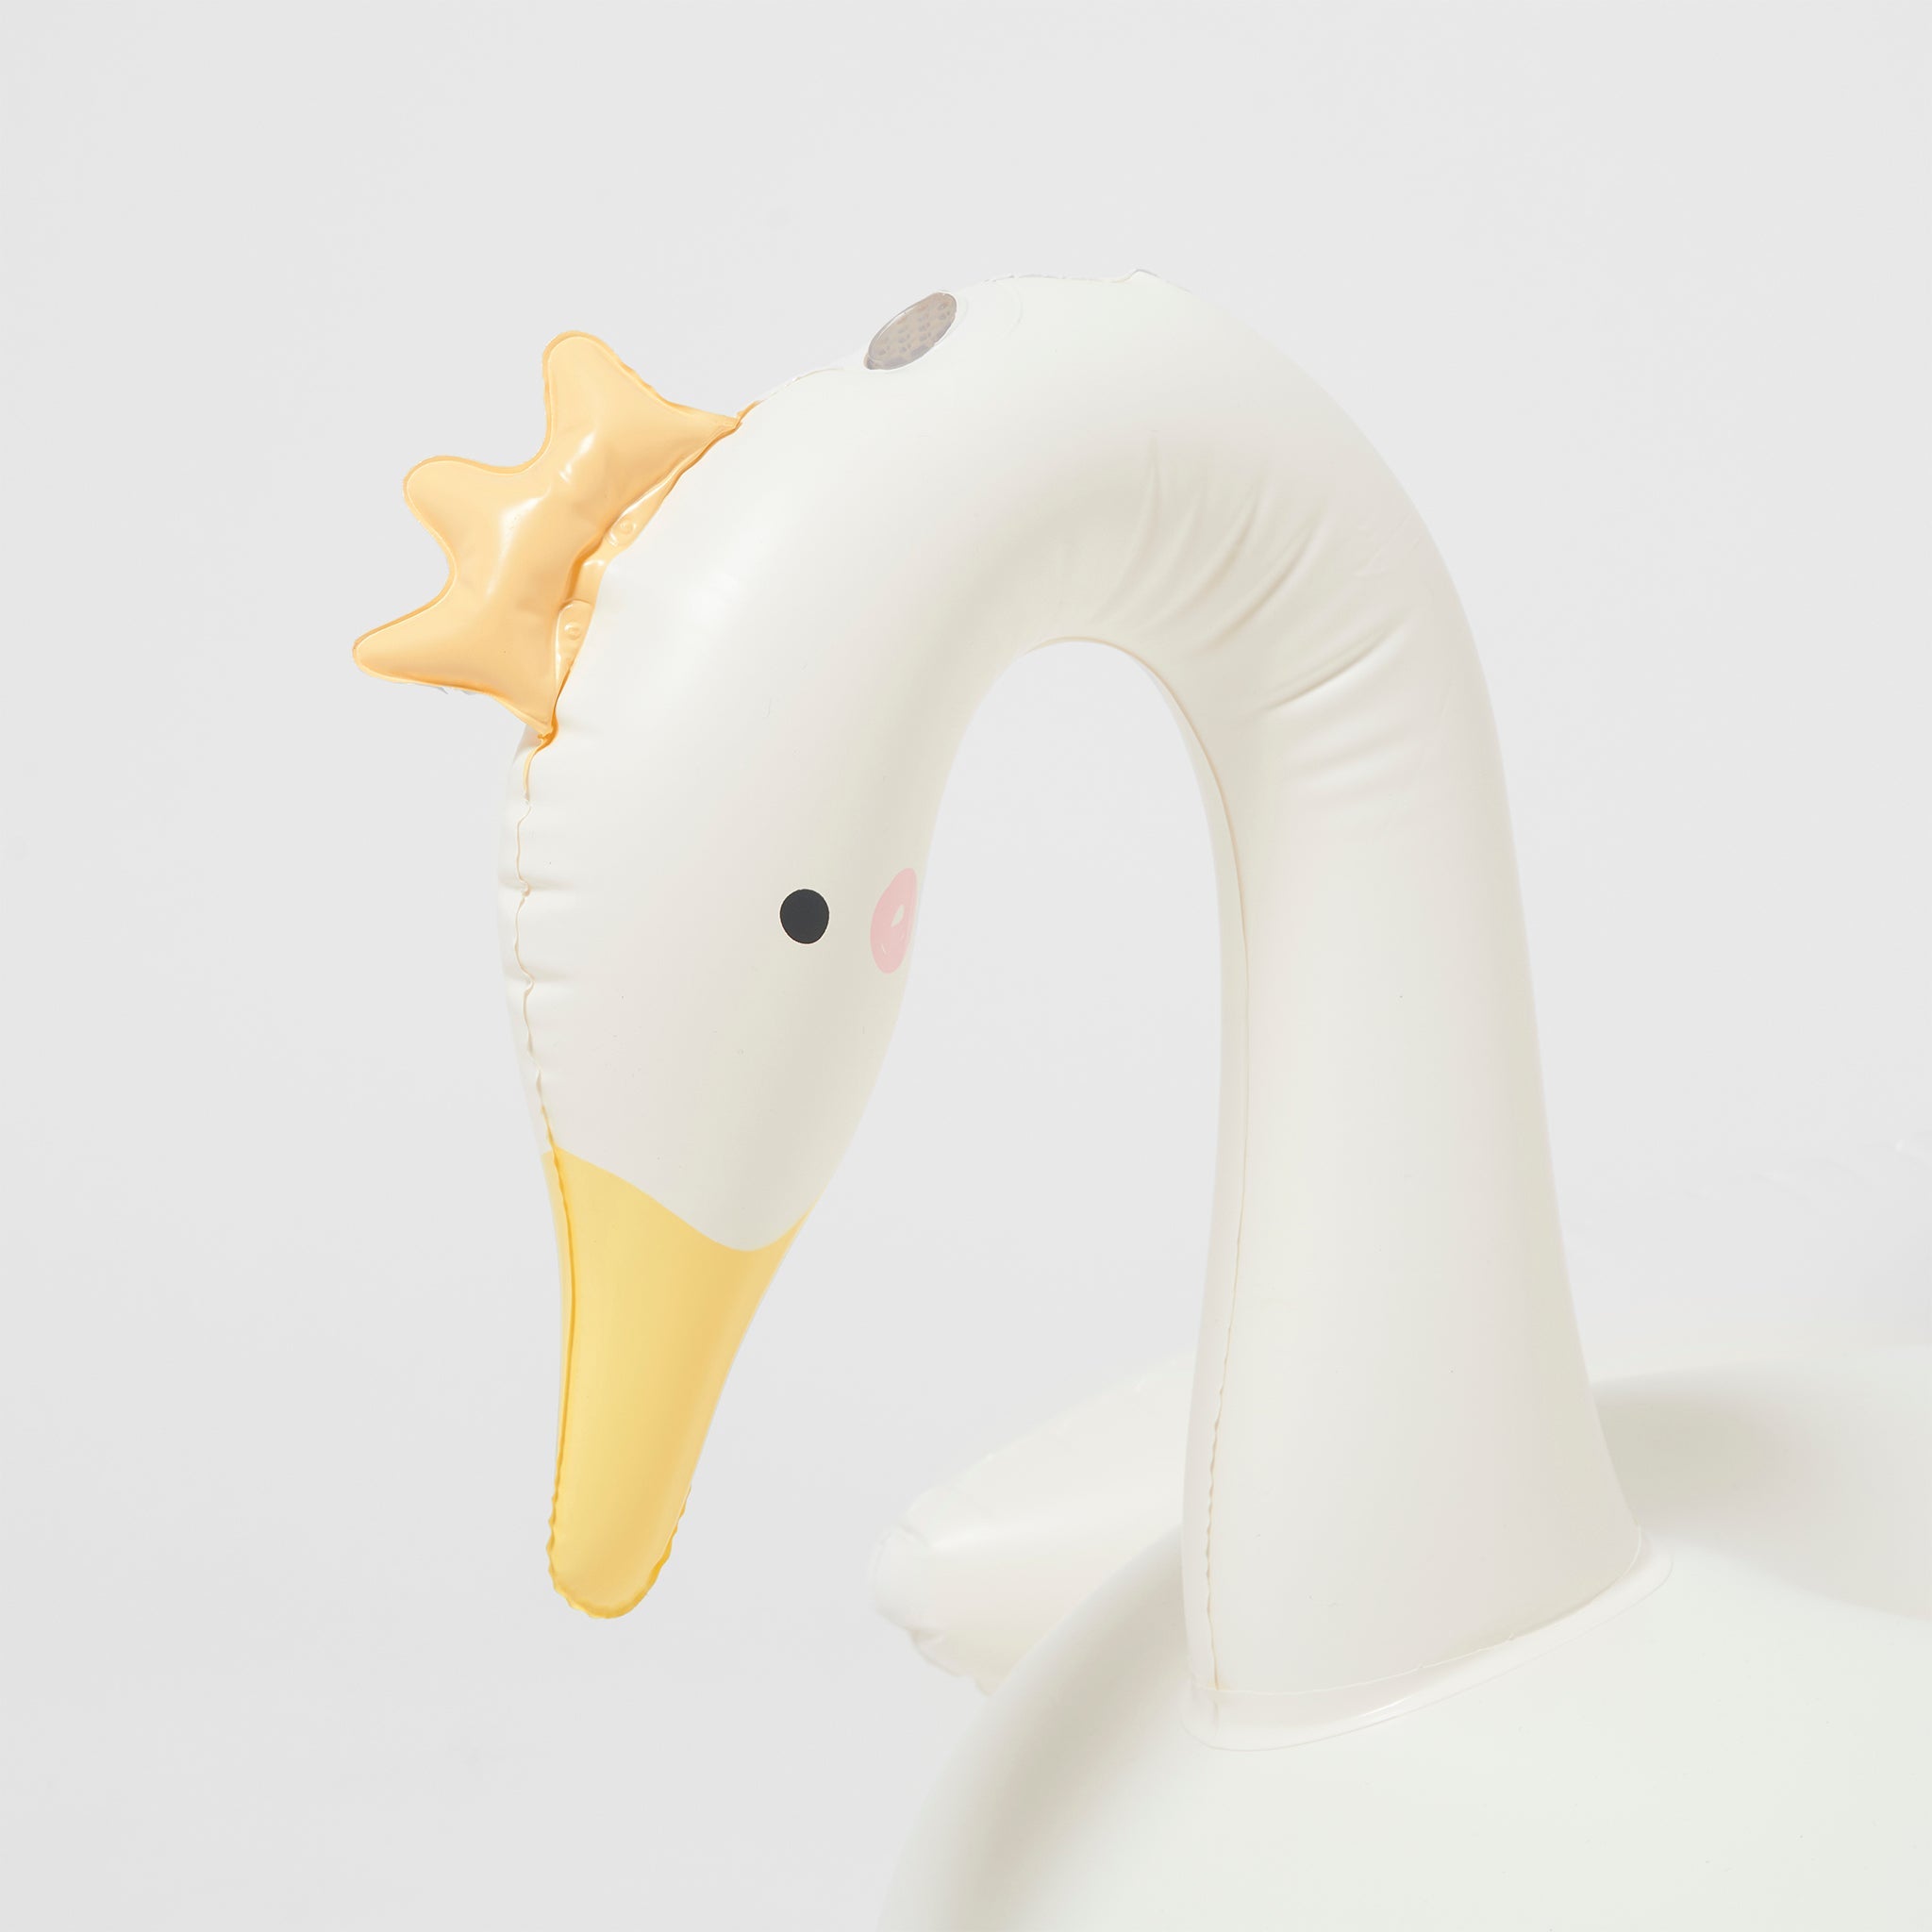 Inflatable Sprinkler | Princess Swan Multi